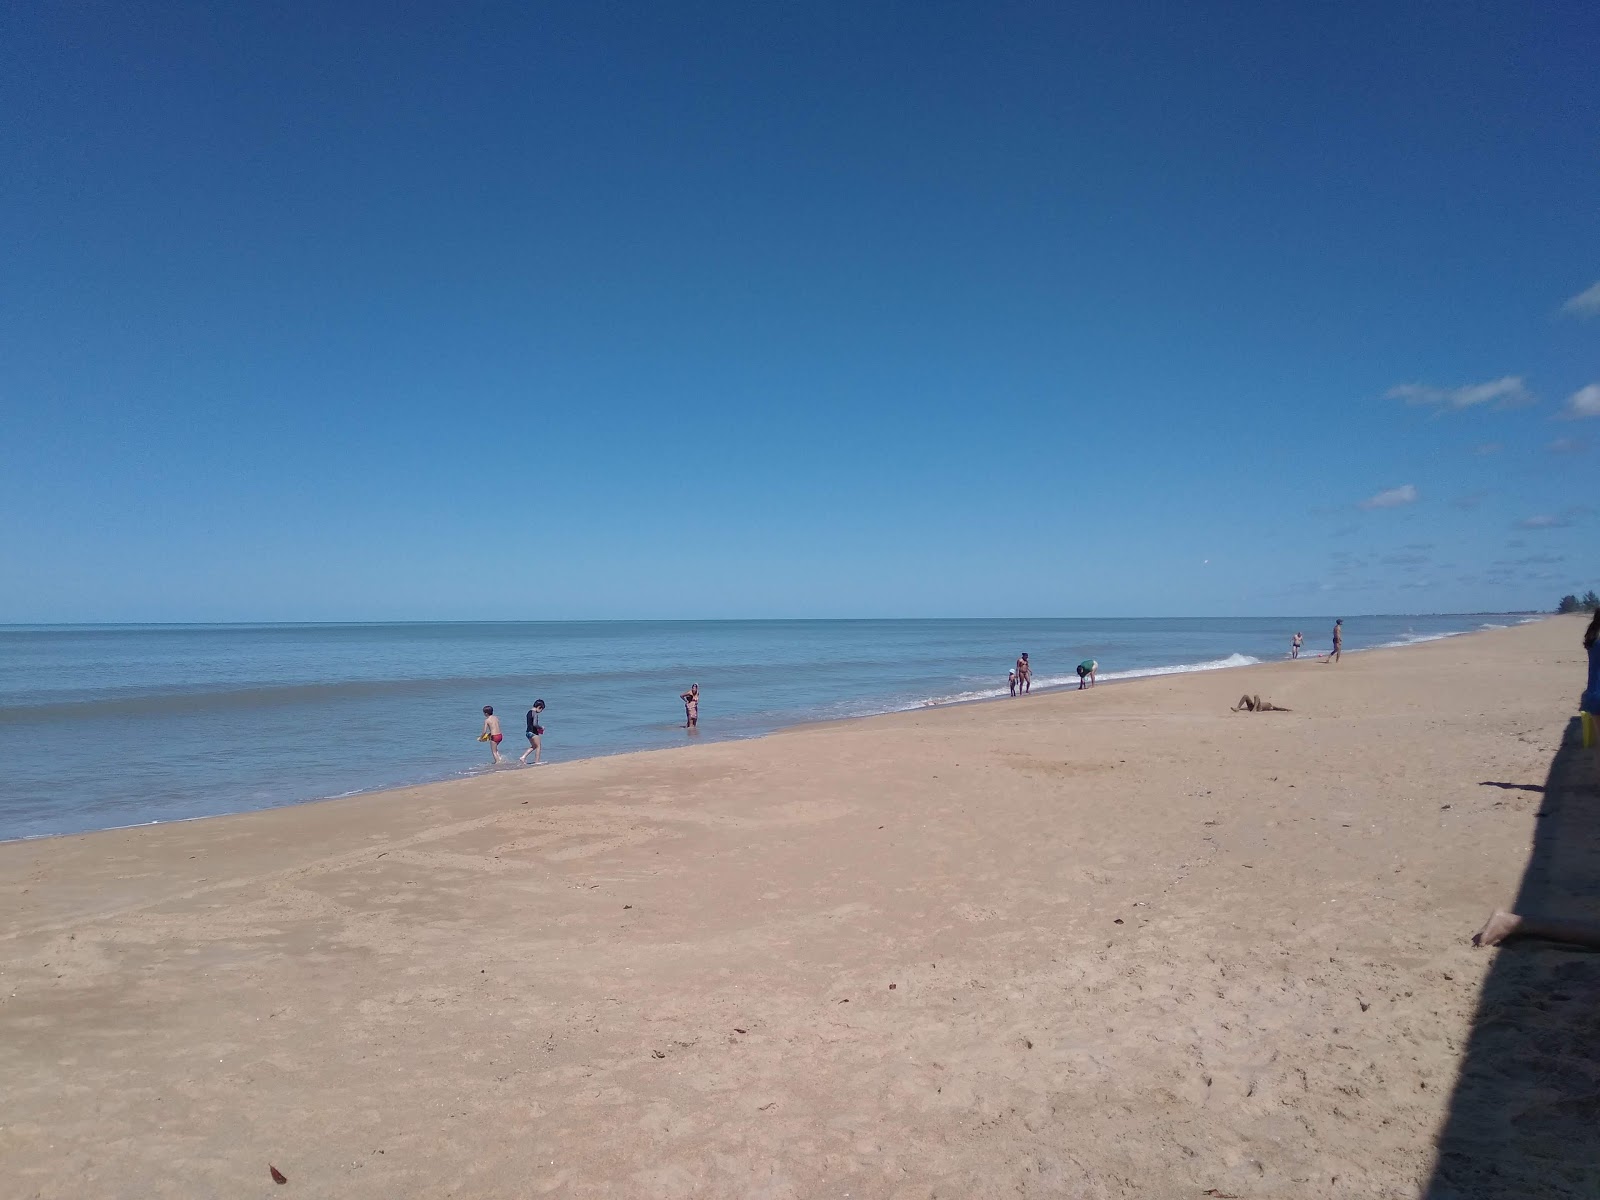 Atlantico Plajı'in fotoğrafı çok temiz temizlik seviyesi ile